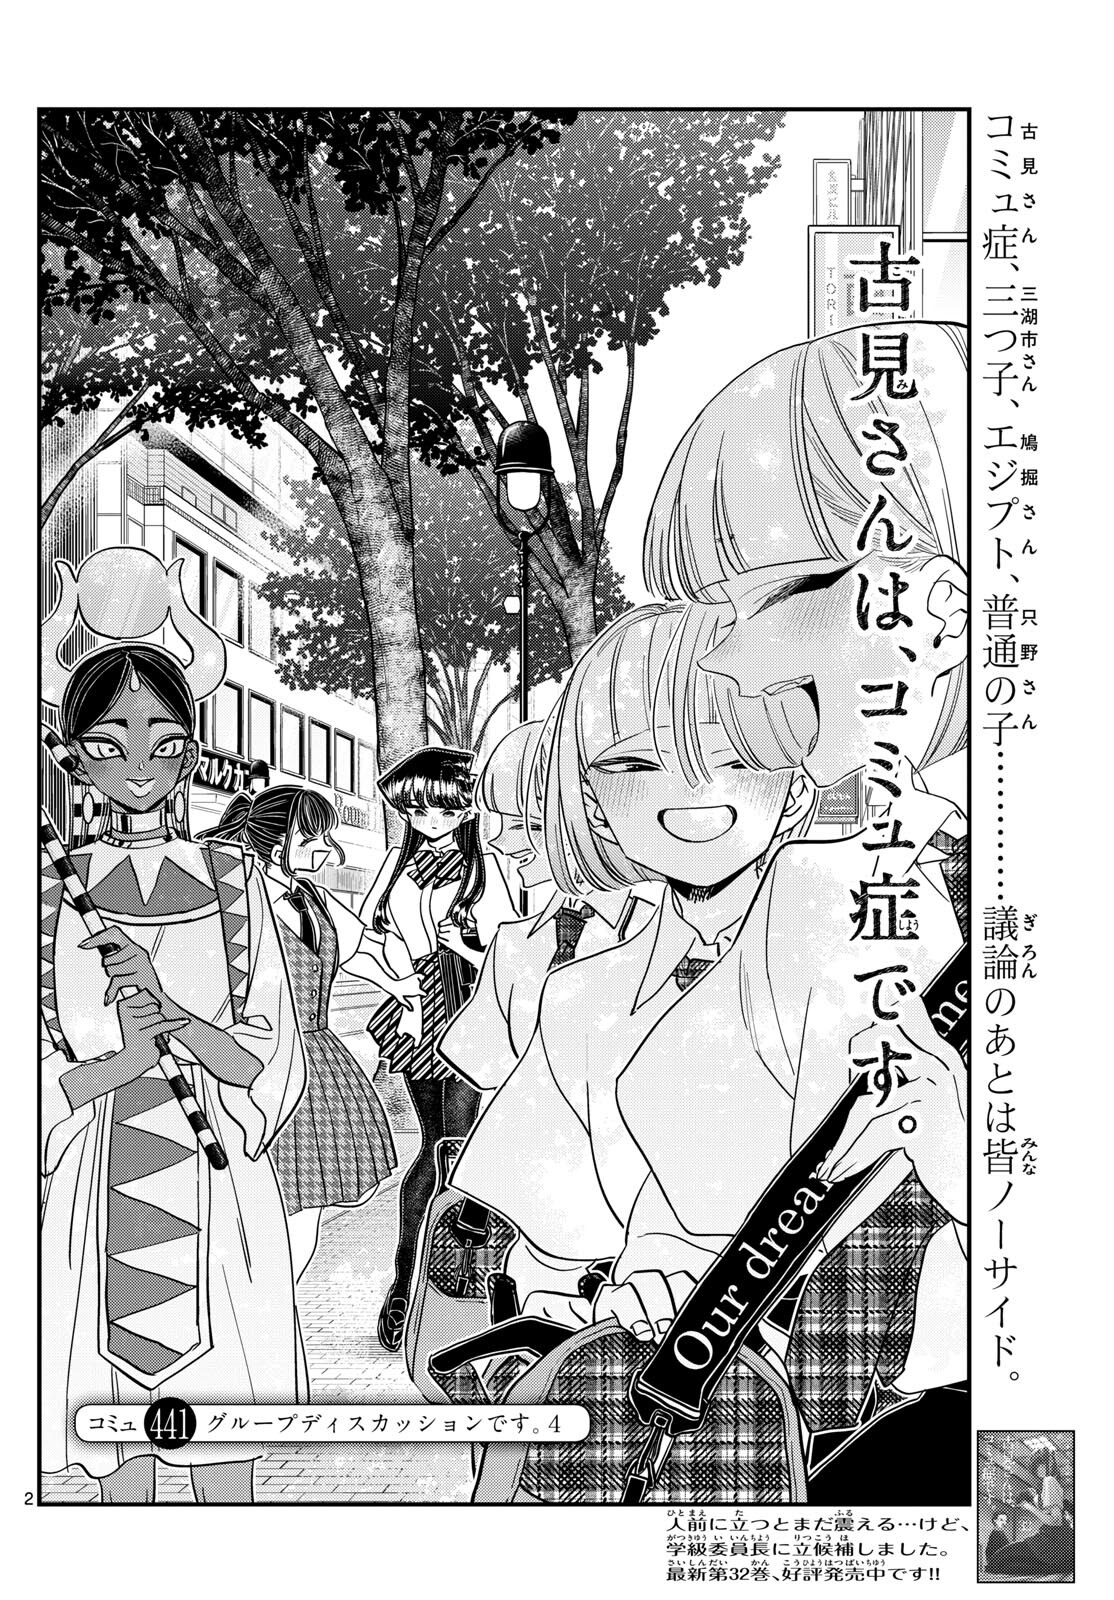 Komi-san wa Komyushou Desu - Chapter 441 - Page 2